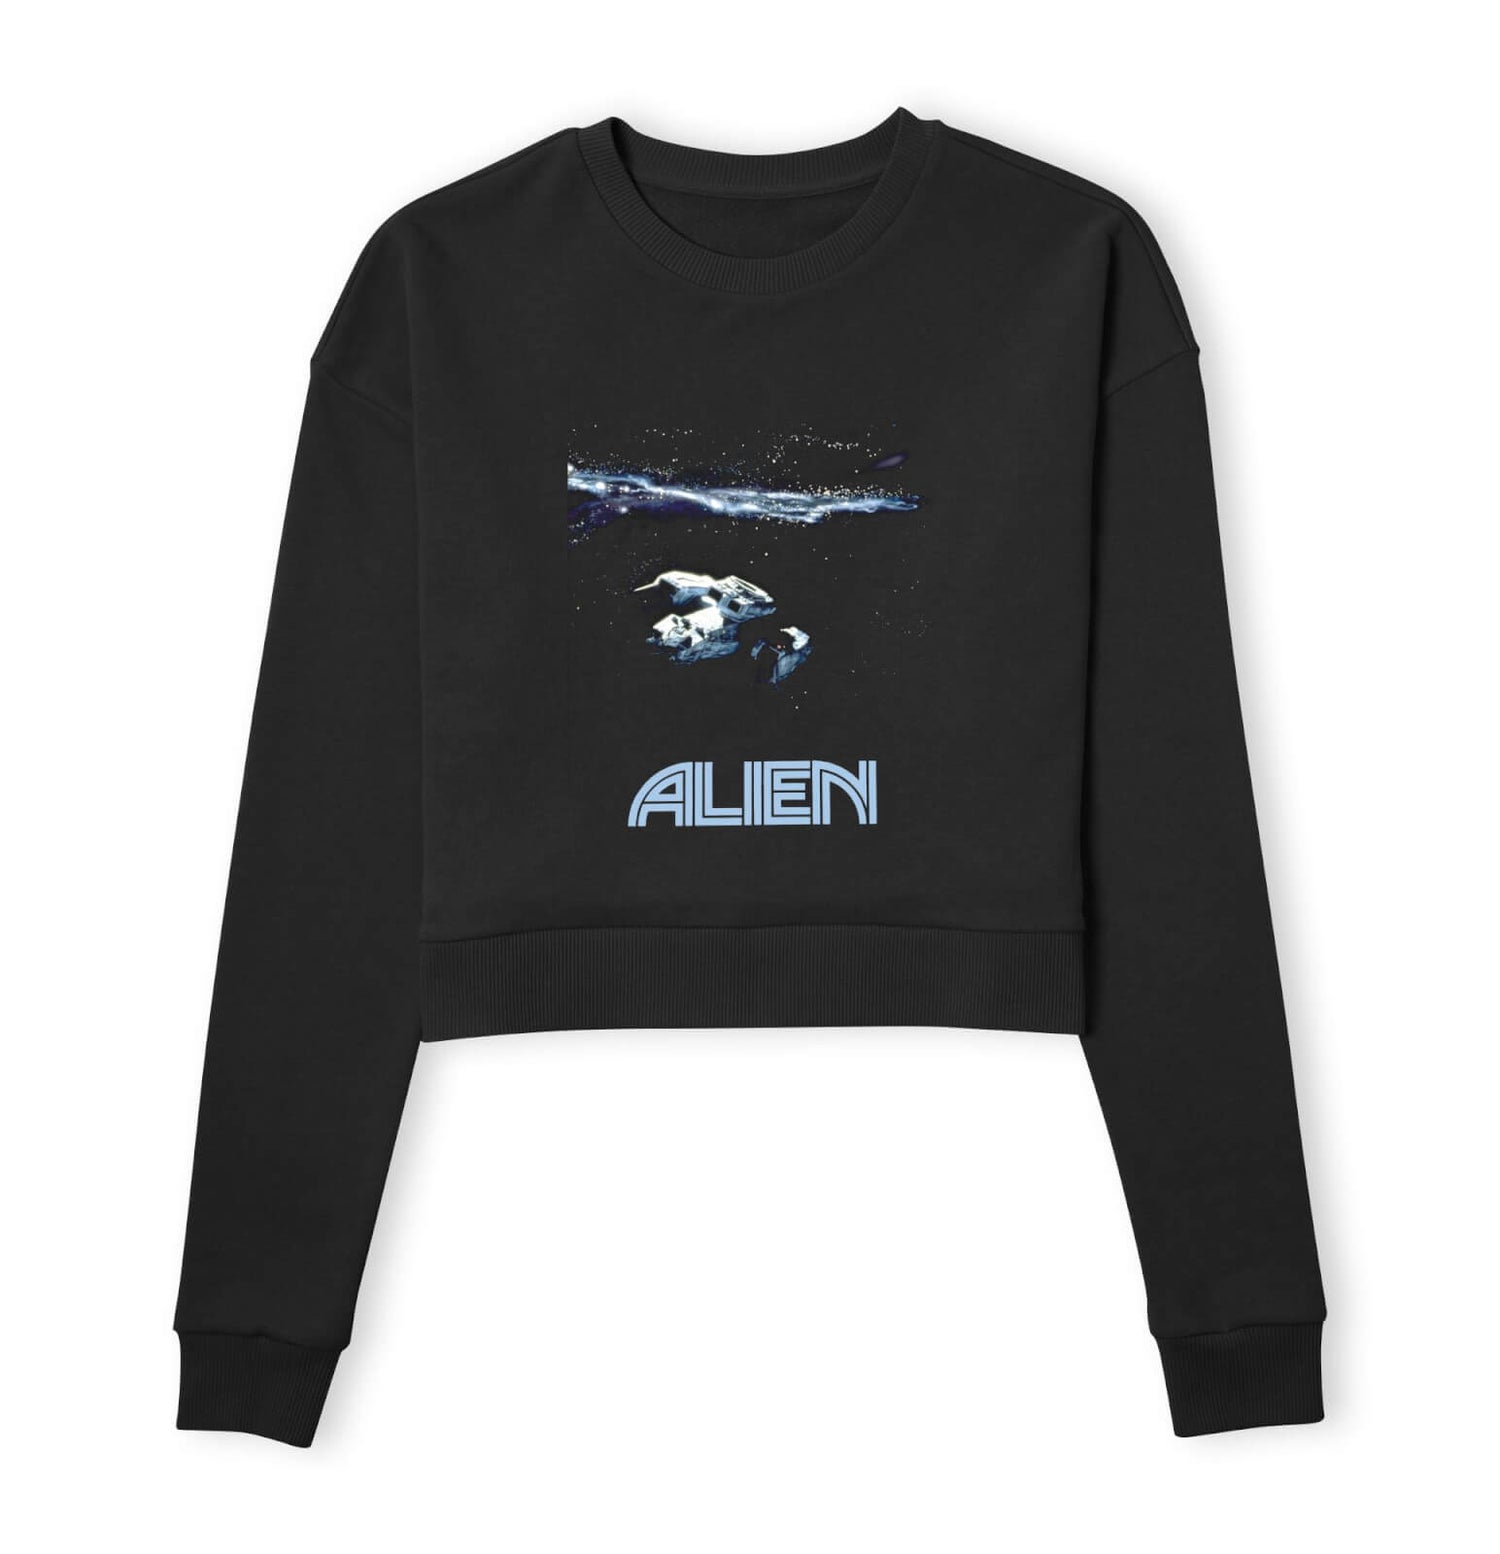 Alien Spacetravel Still Women's Cropped Sweatshirt - Black